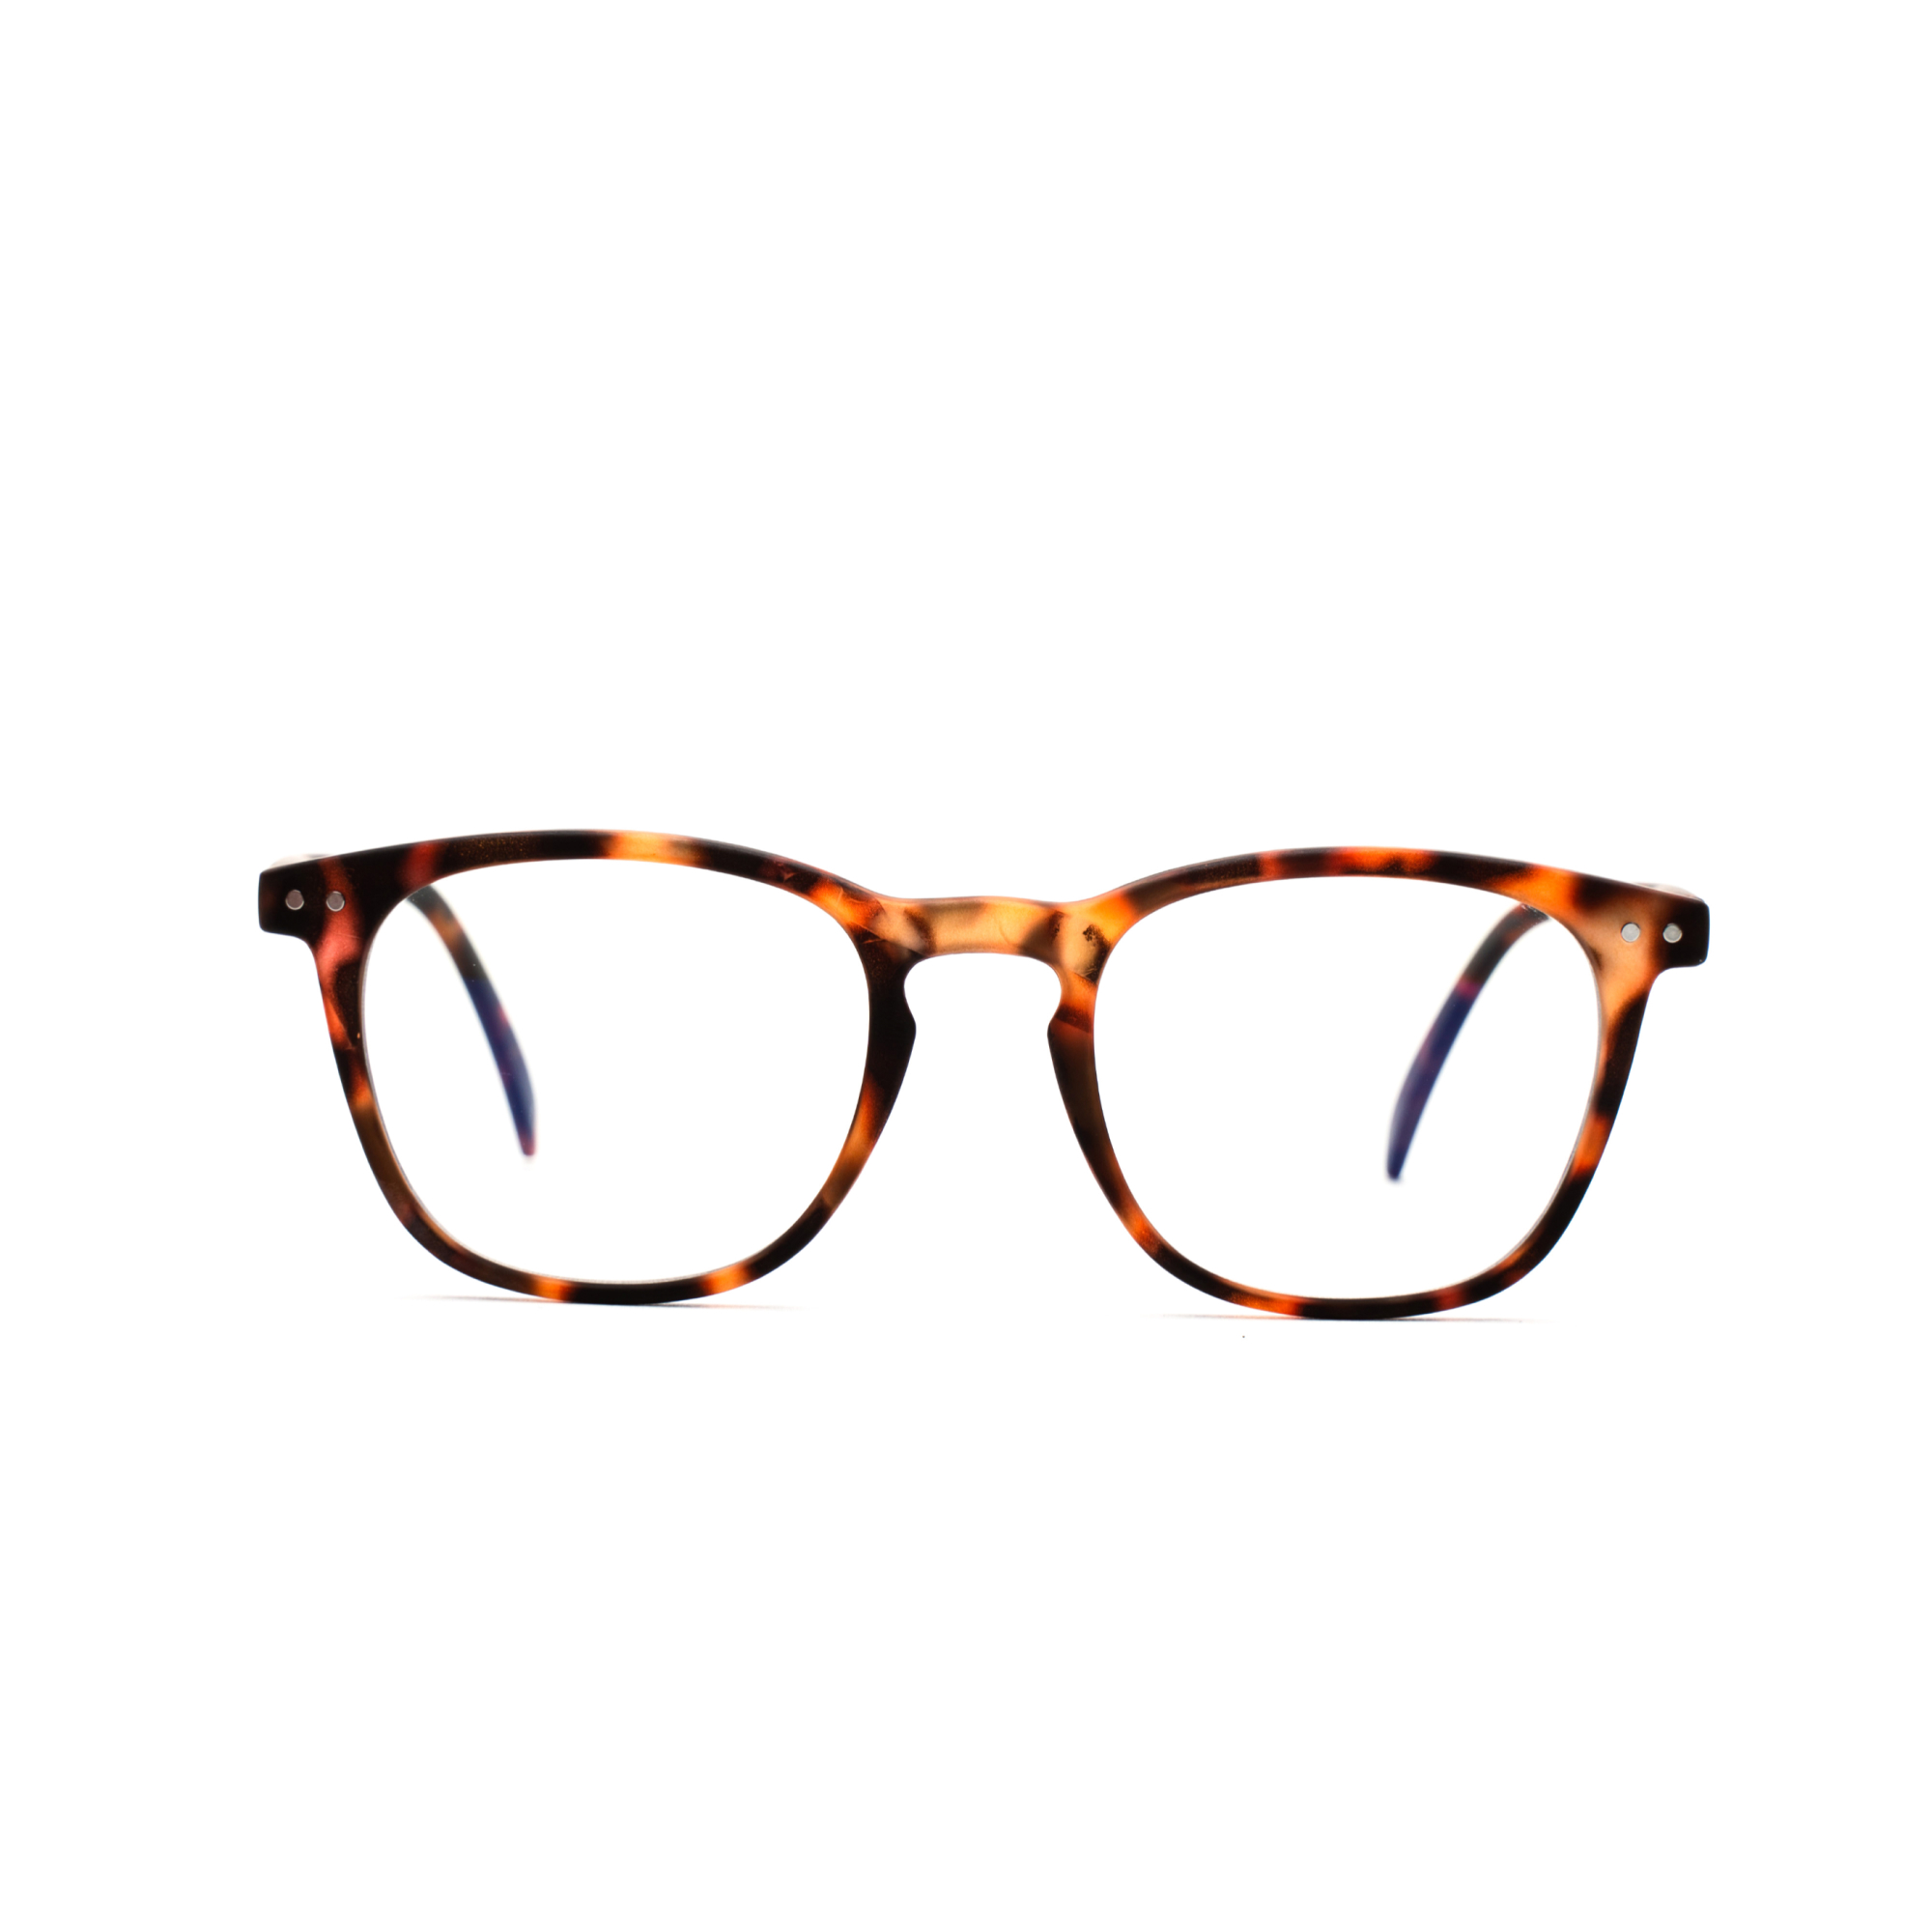 Men's blue light reading glasses – William BlueVision m - Tortoise